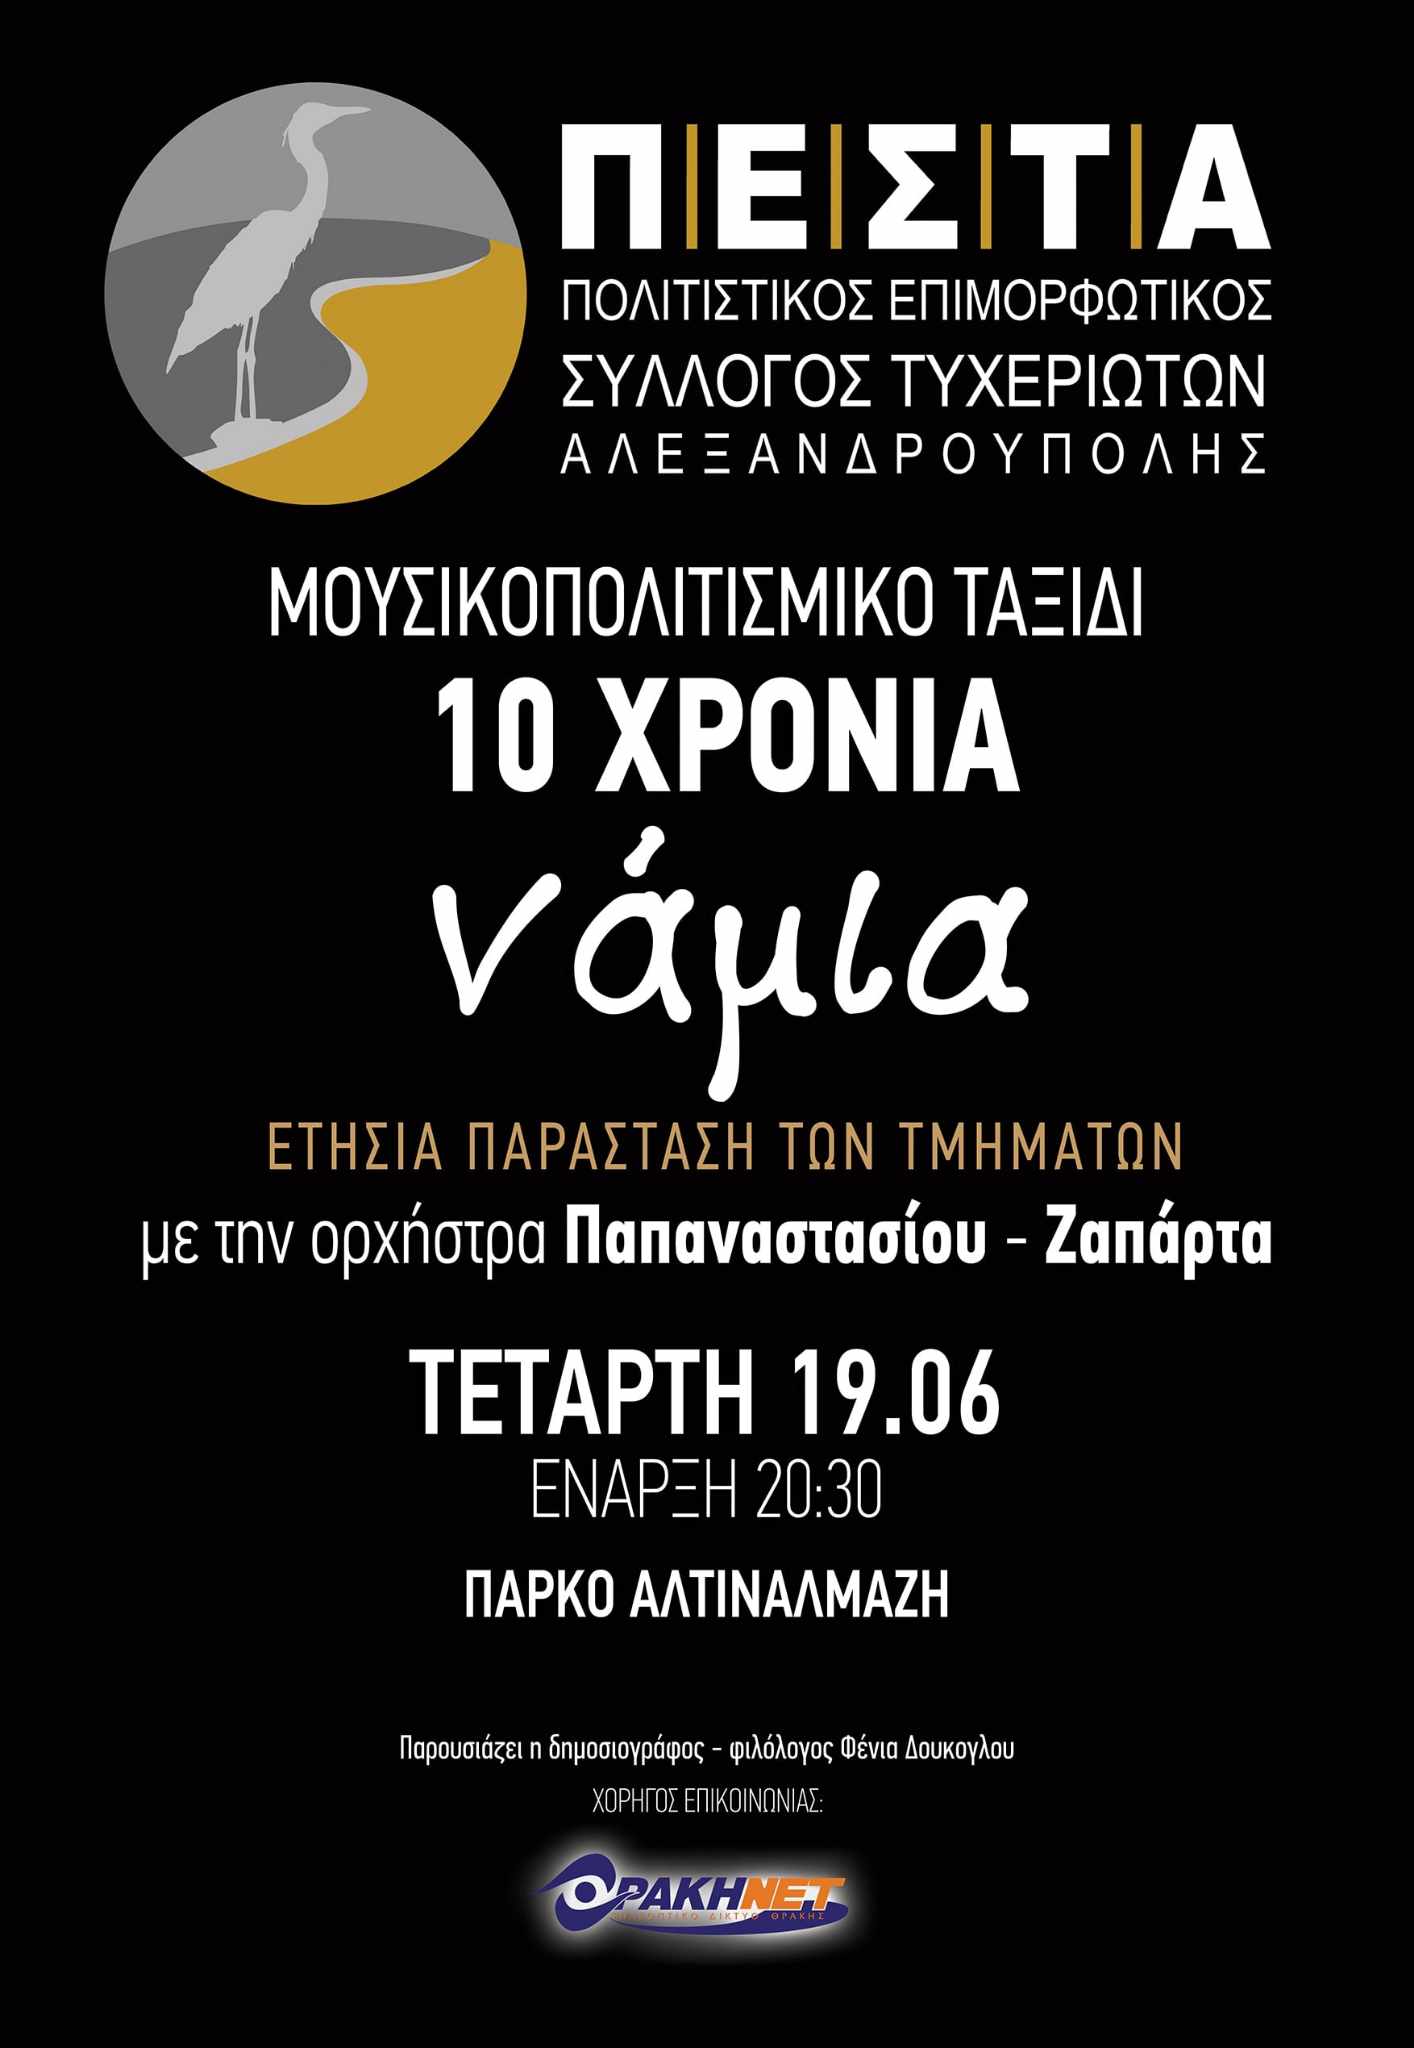 Μουσικοχορευτική παράσταση «10 χρόνια νάμια» από τον Πολιτιστικό Επιμορφωτικό Σύλλογο Τυχεριωτών Αλεξανδρούπολης ΠΕΣΤΑ